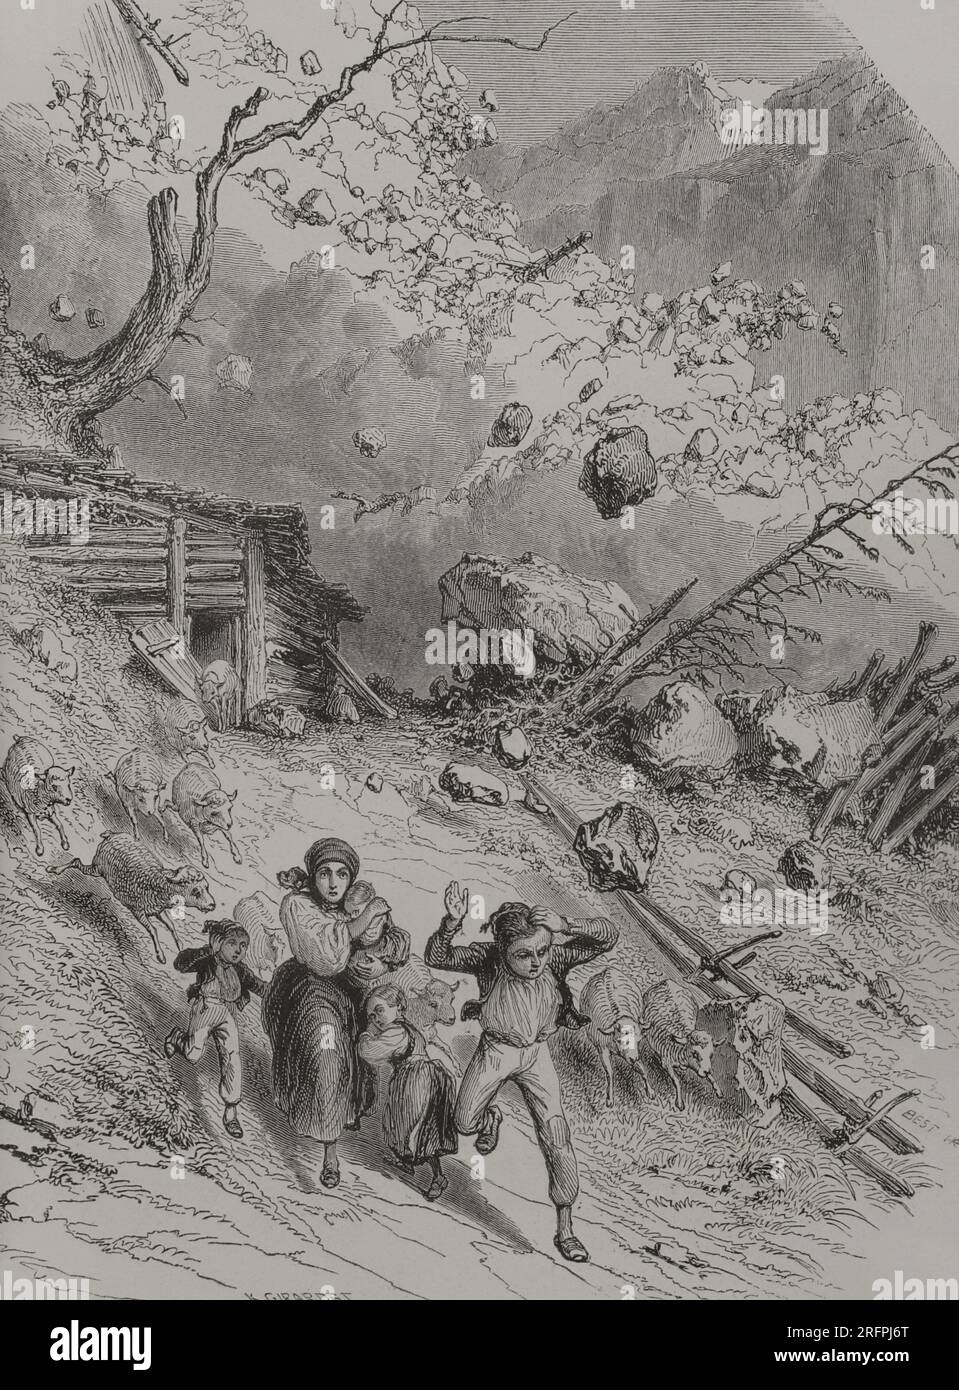 Eine Lawine in den Alpen. Gravur von K. Girardet. "Los Héroes y las Grandezas de la Tierra". Band V. 1855. Stockfoto